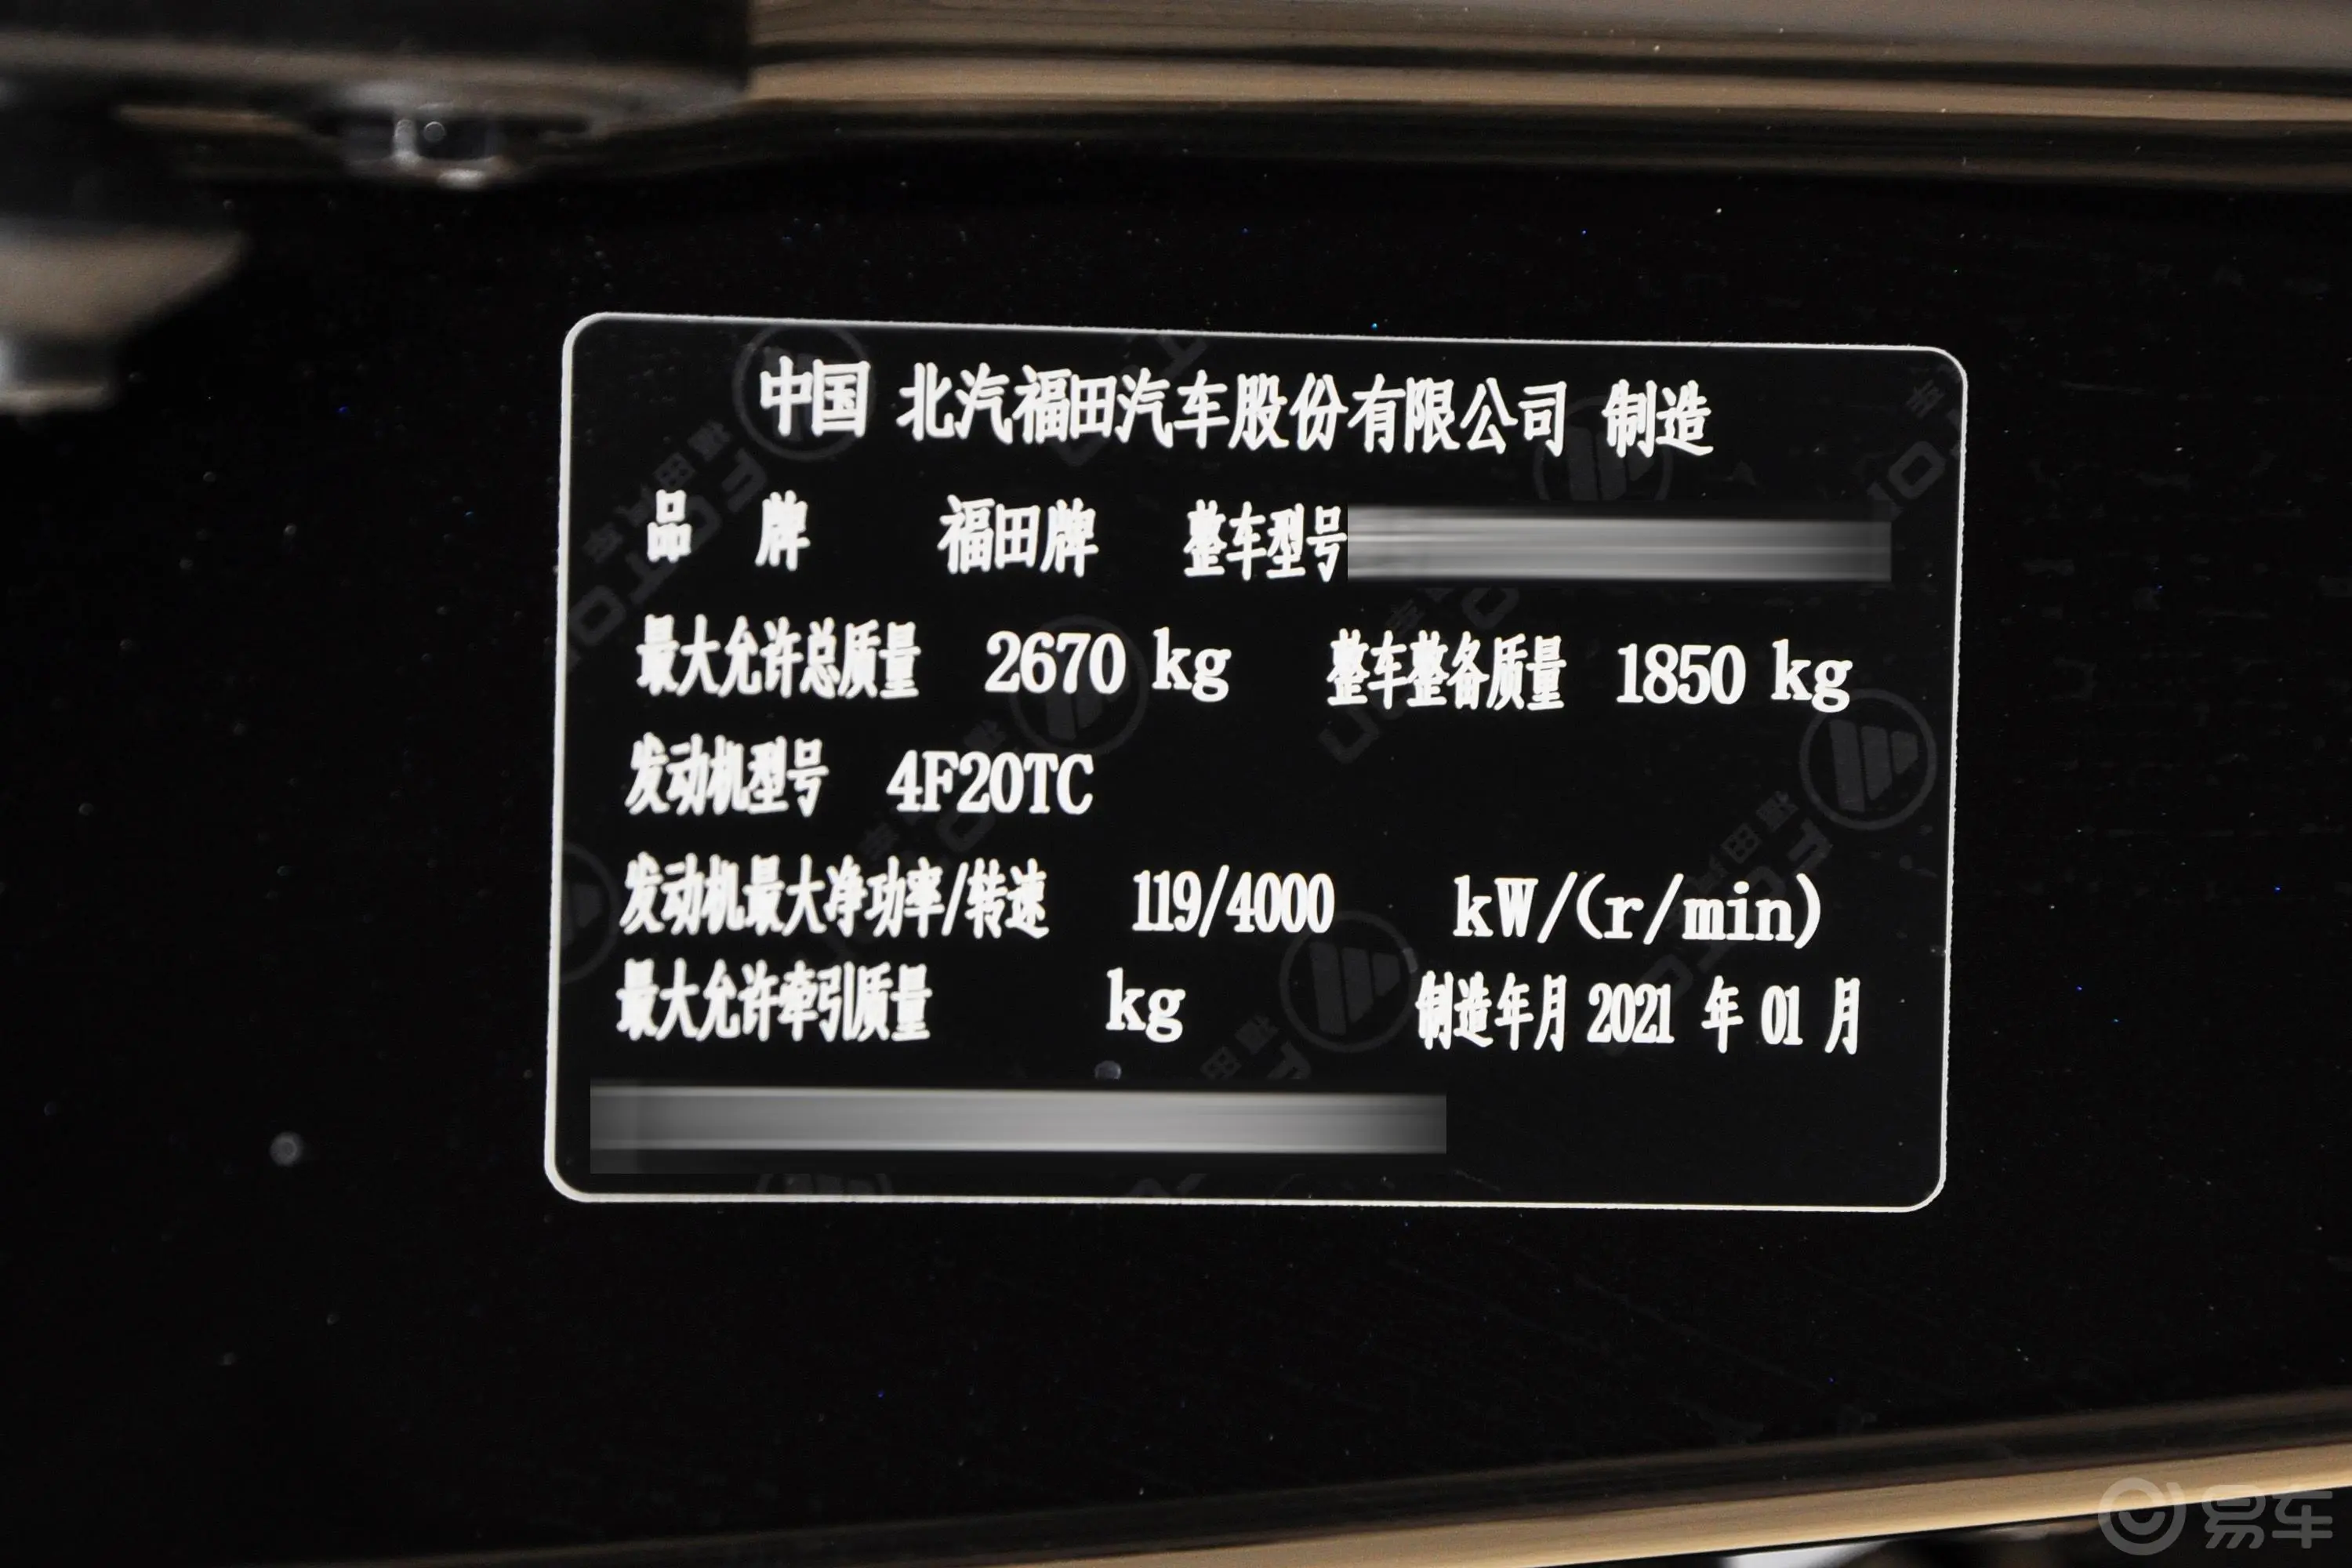 福田征服者32.0T 手动 两驱 长轴低货台 电商型 柴油车辆信息铭牌